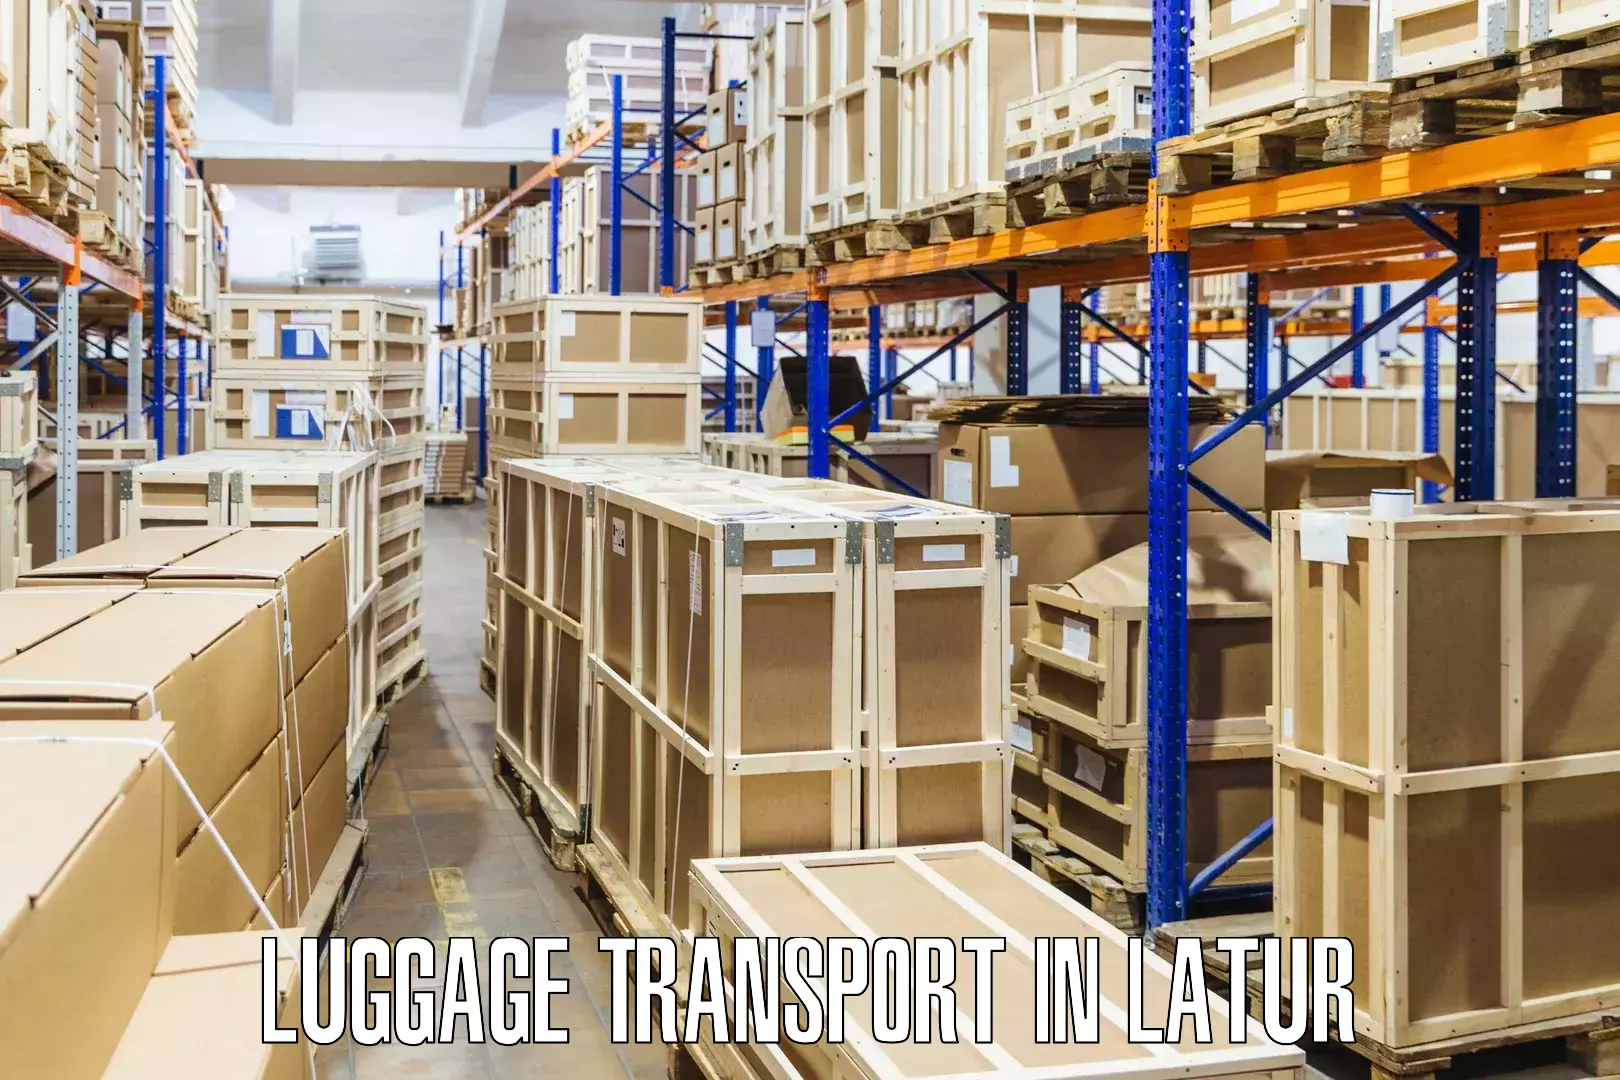 Multi-destination luggage transport in Latur